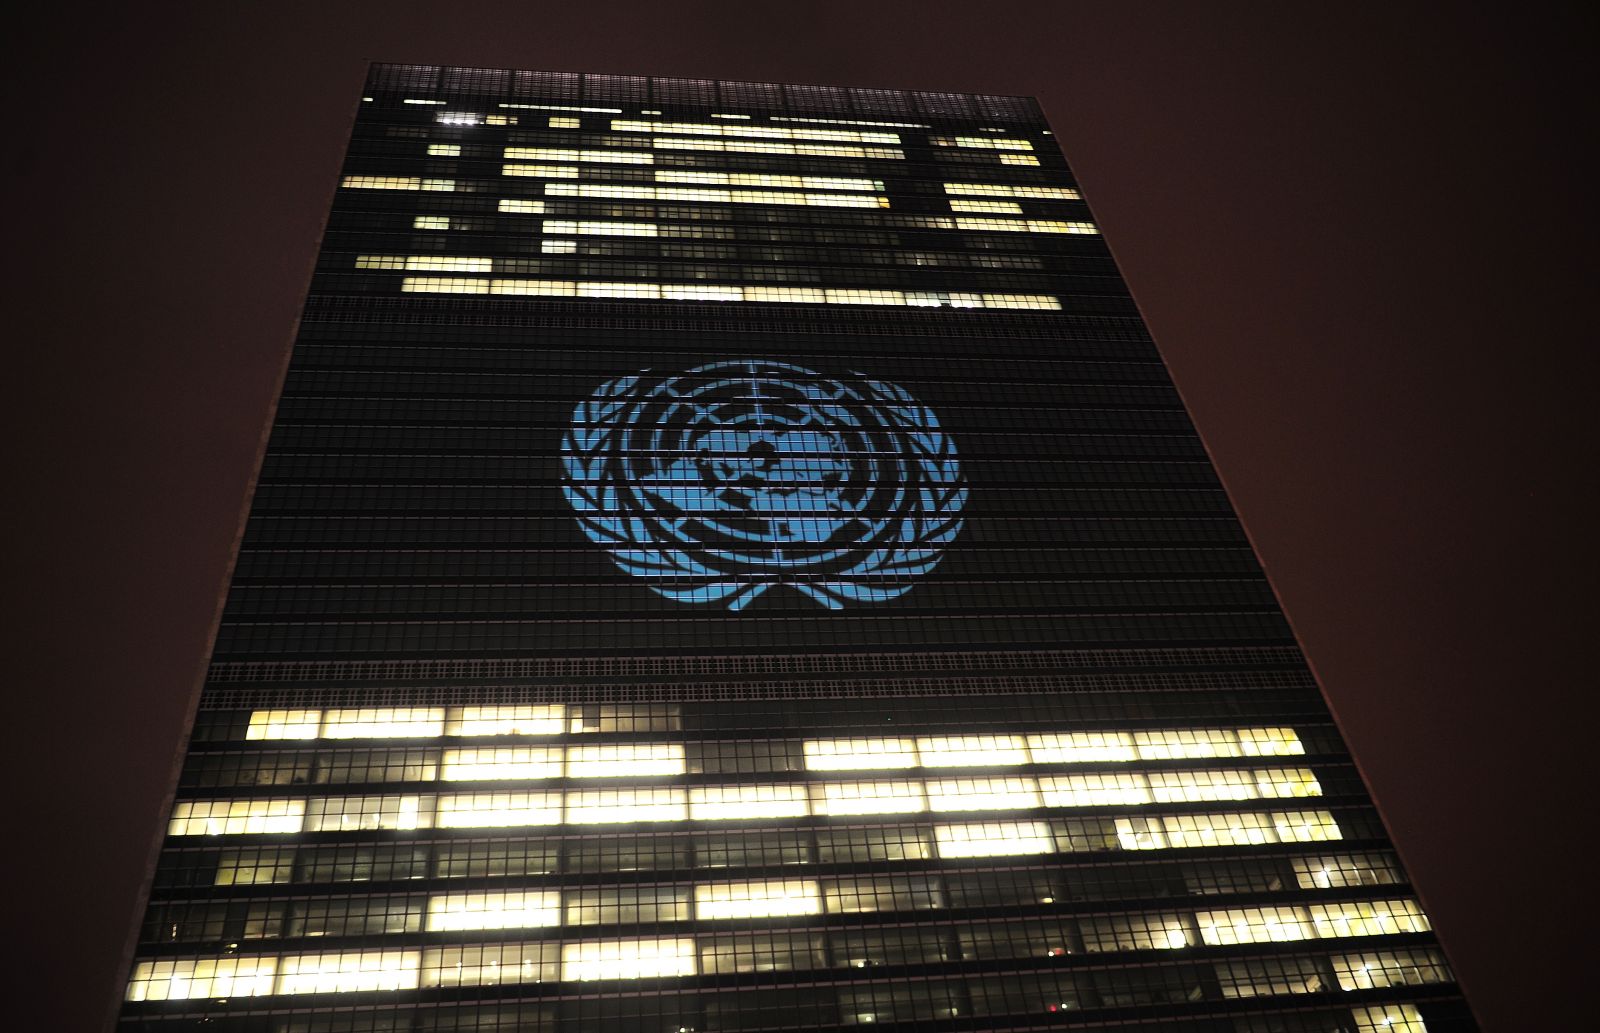   الأمم المتحدة تؤكد بشكل نهائي موعد المفاوضات السورية الجديدة